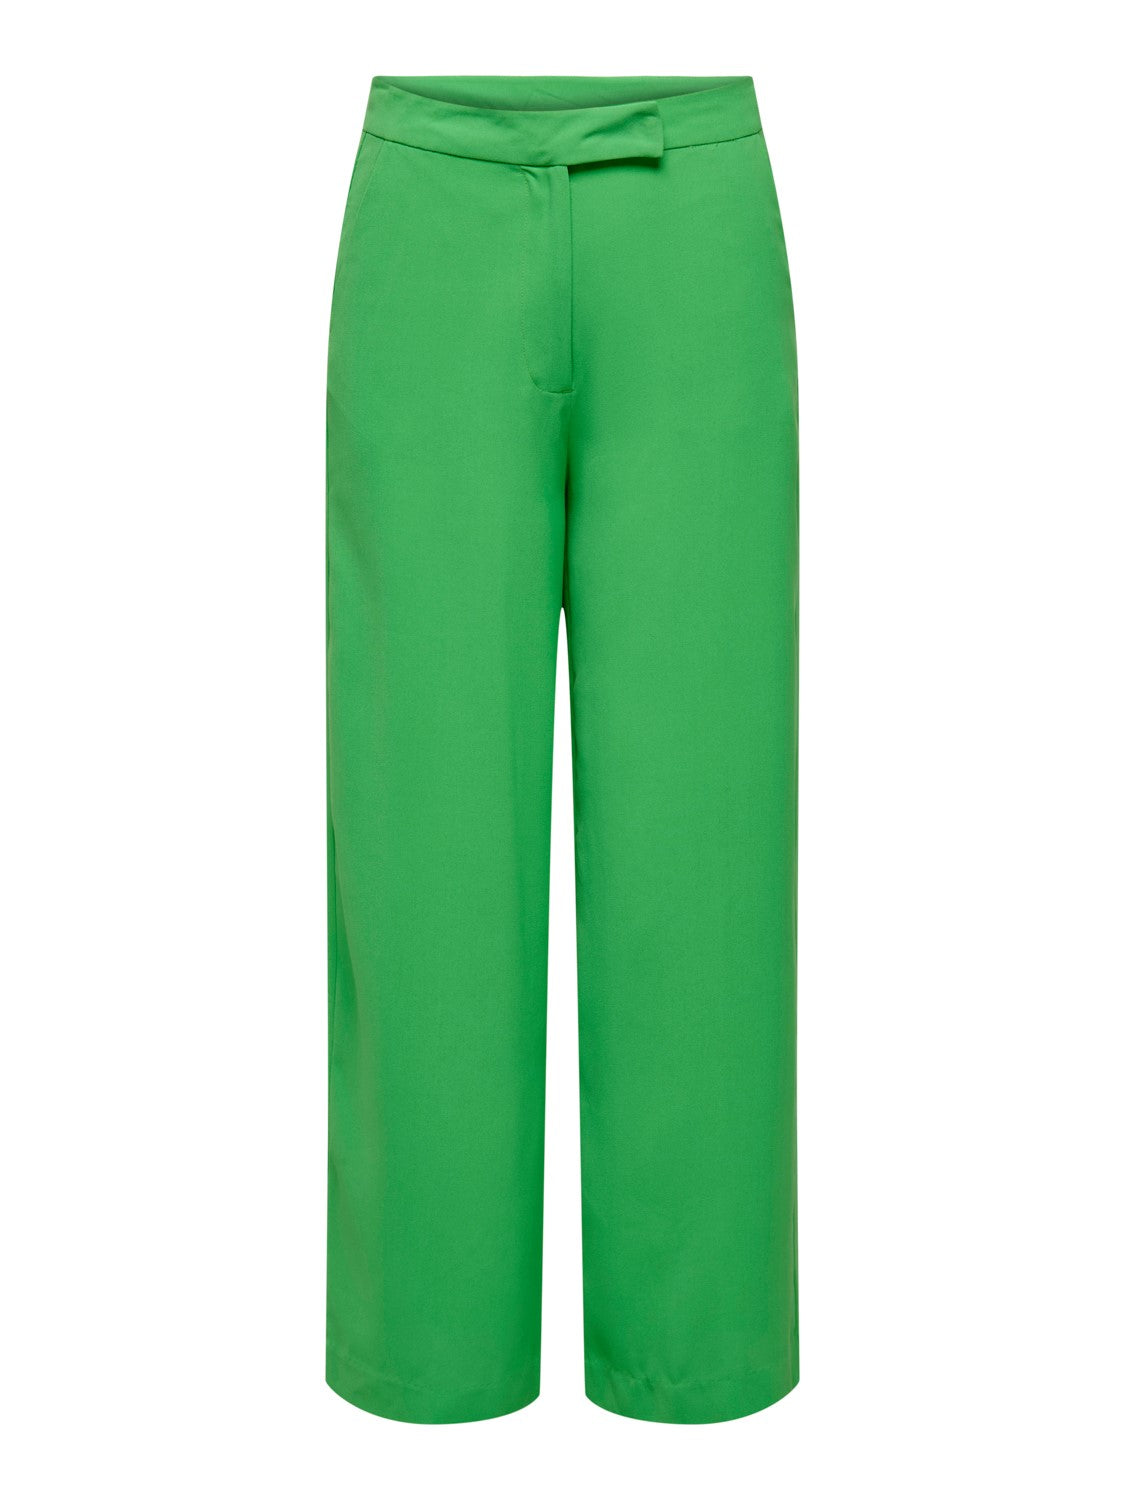 Pantalón recto ancho color verde TAlla M